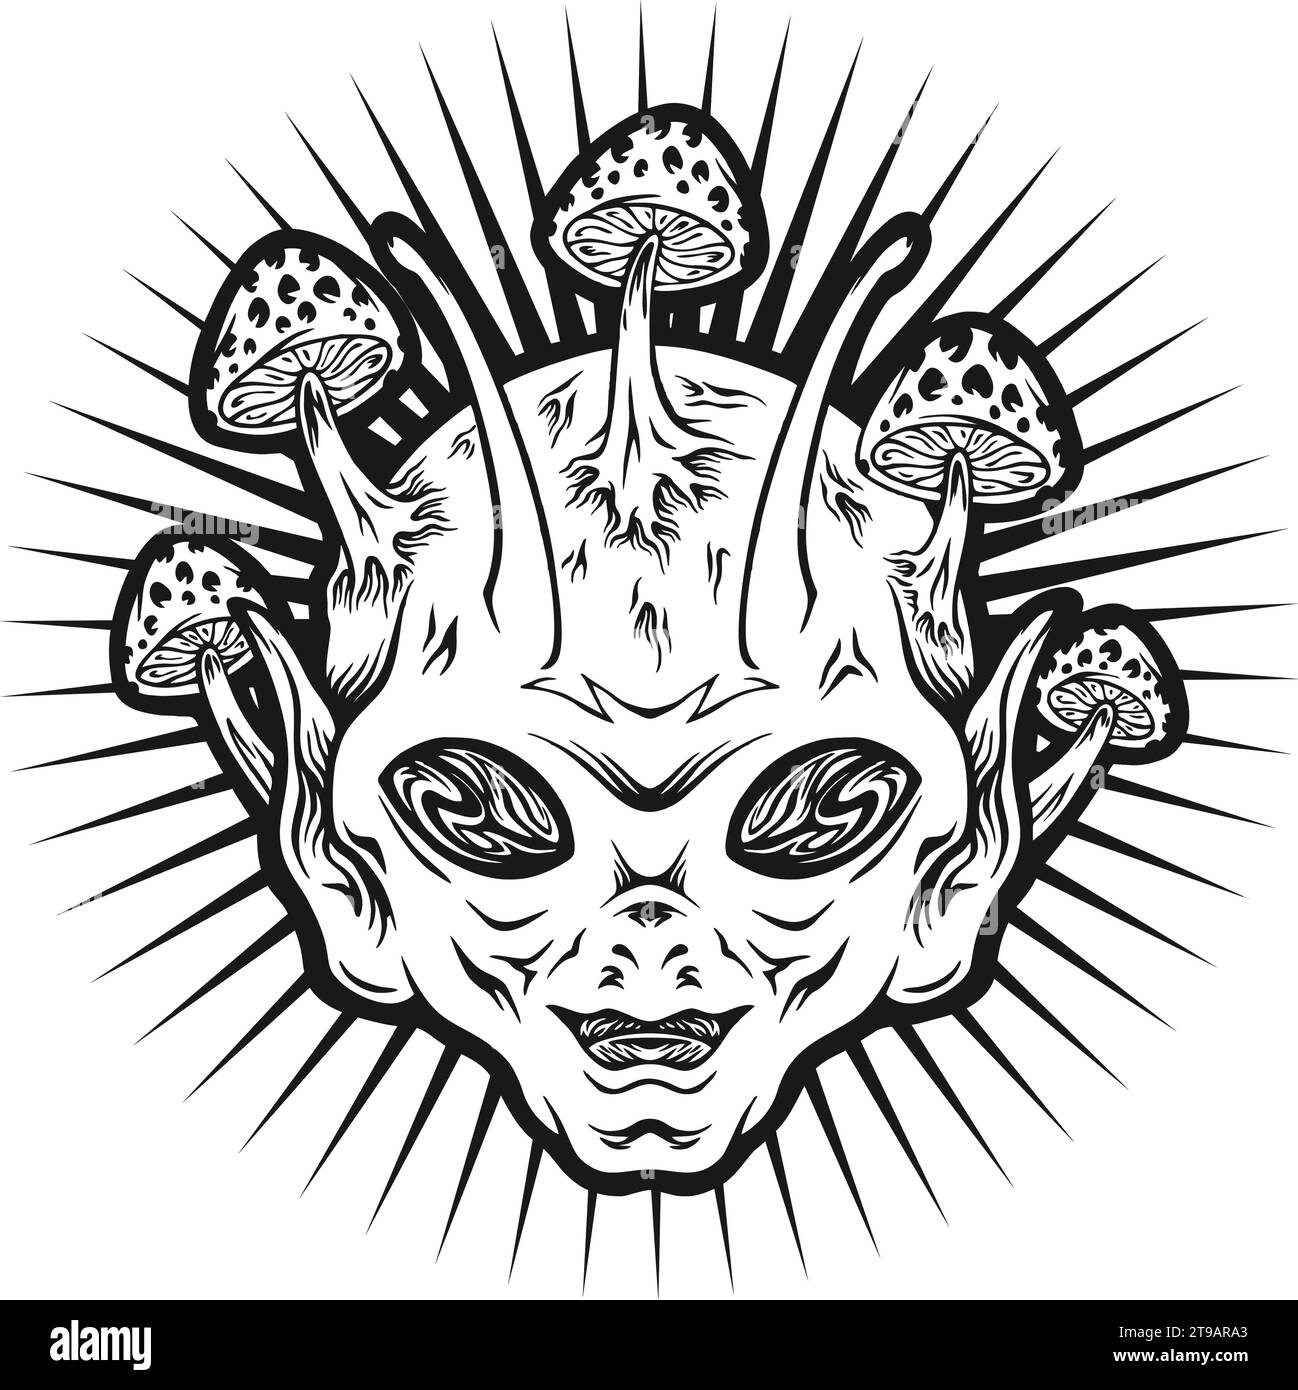 Mind Warp Pilze psychedelische Alien Kopf Silhouette Vektor Illustrationen für Ihre Arbeit Logo, Merchandise T-Shirt, Aufkleber und Label Designs, Poster Stock Vektor